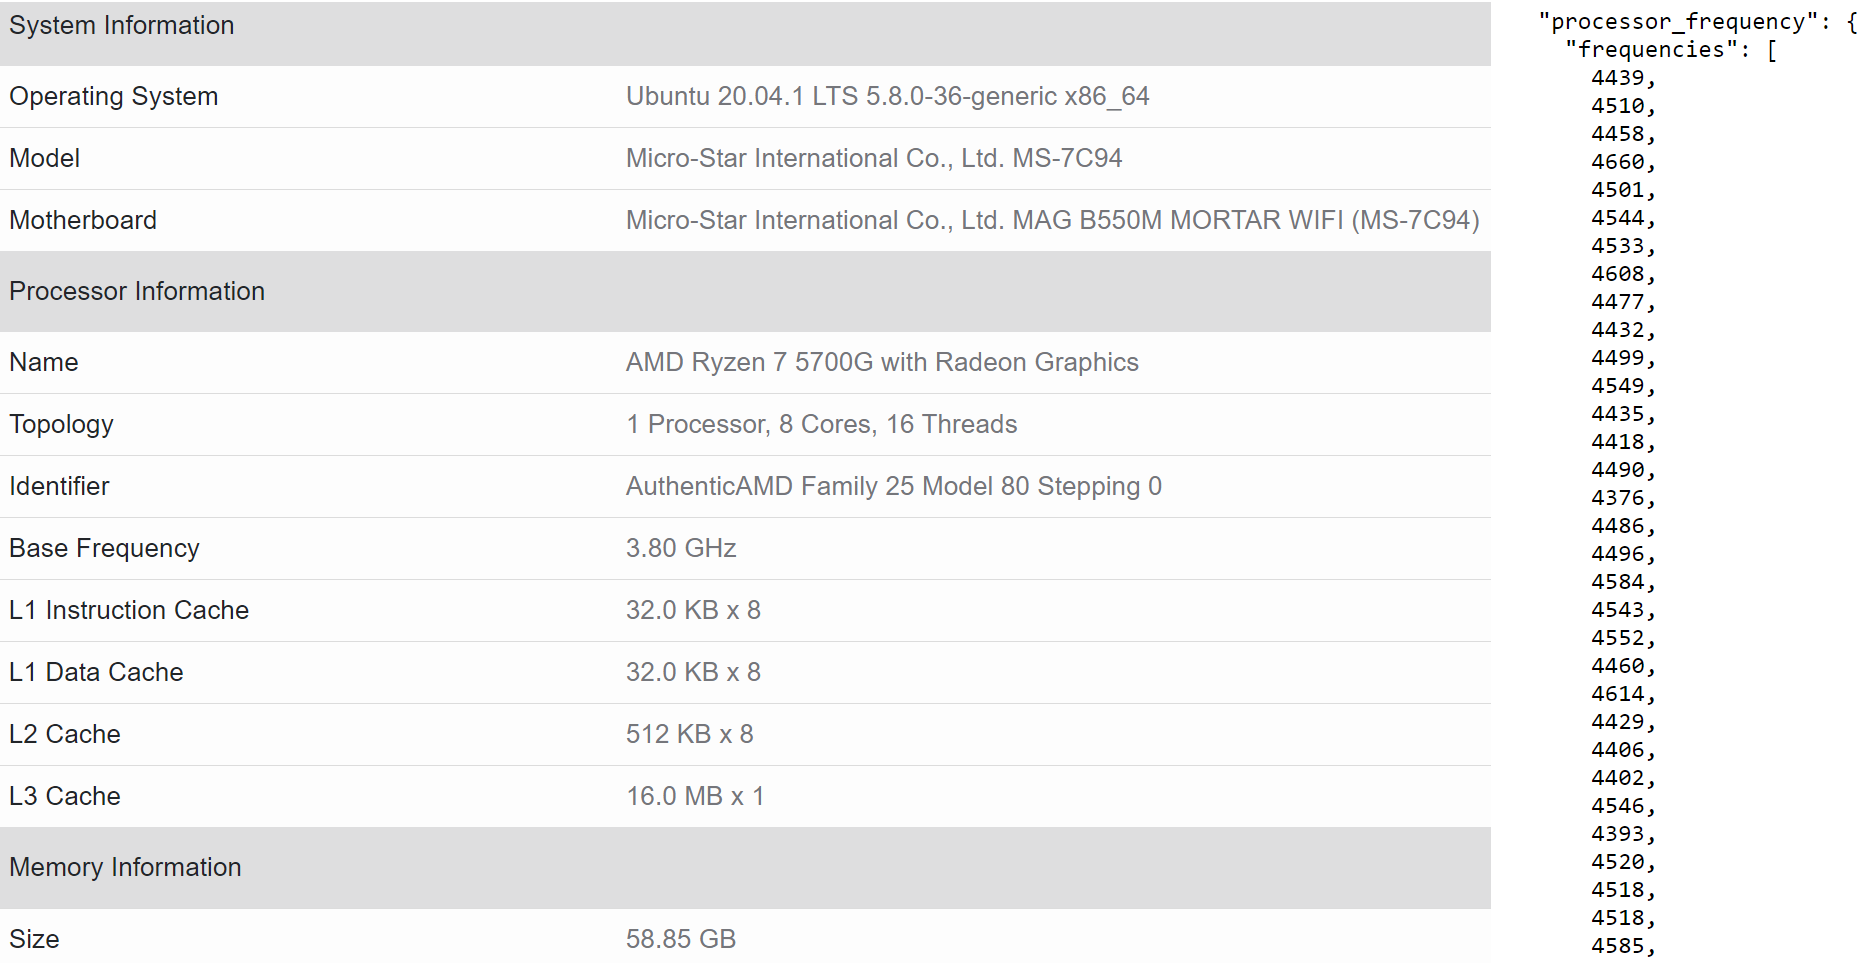 AMD Ryzen 7 5700G Cezanne desktop APU might have 200 MHz higher